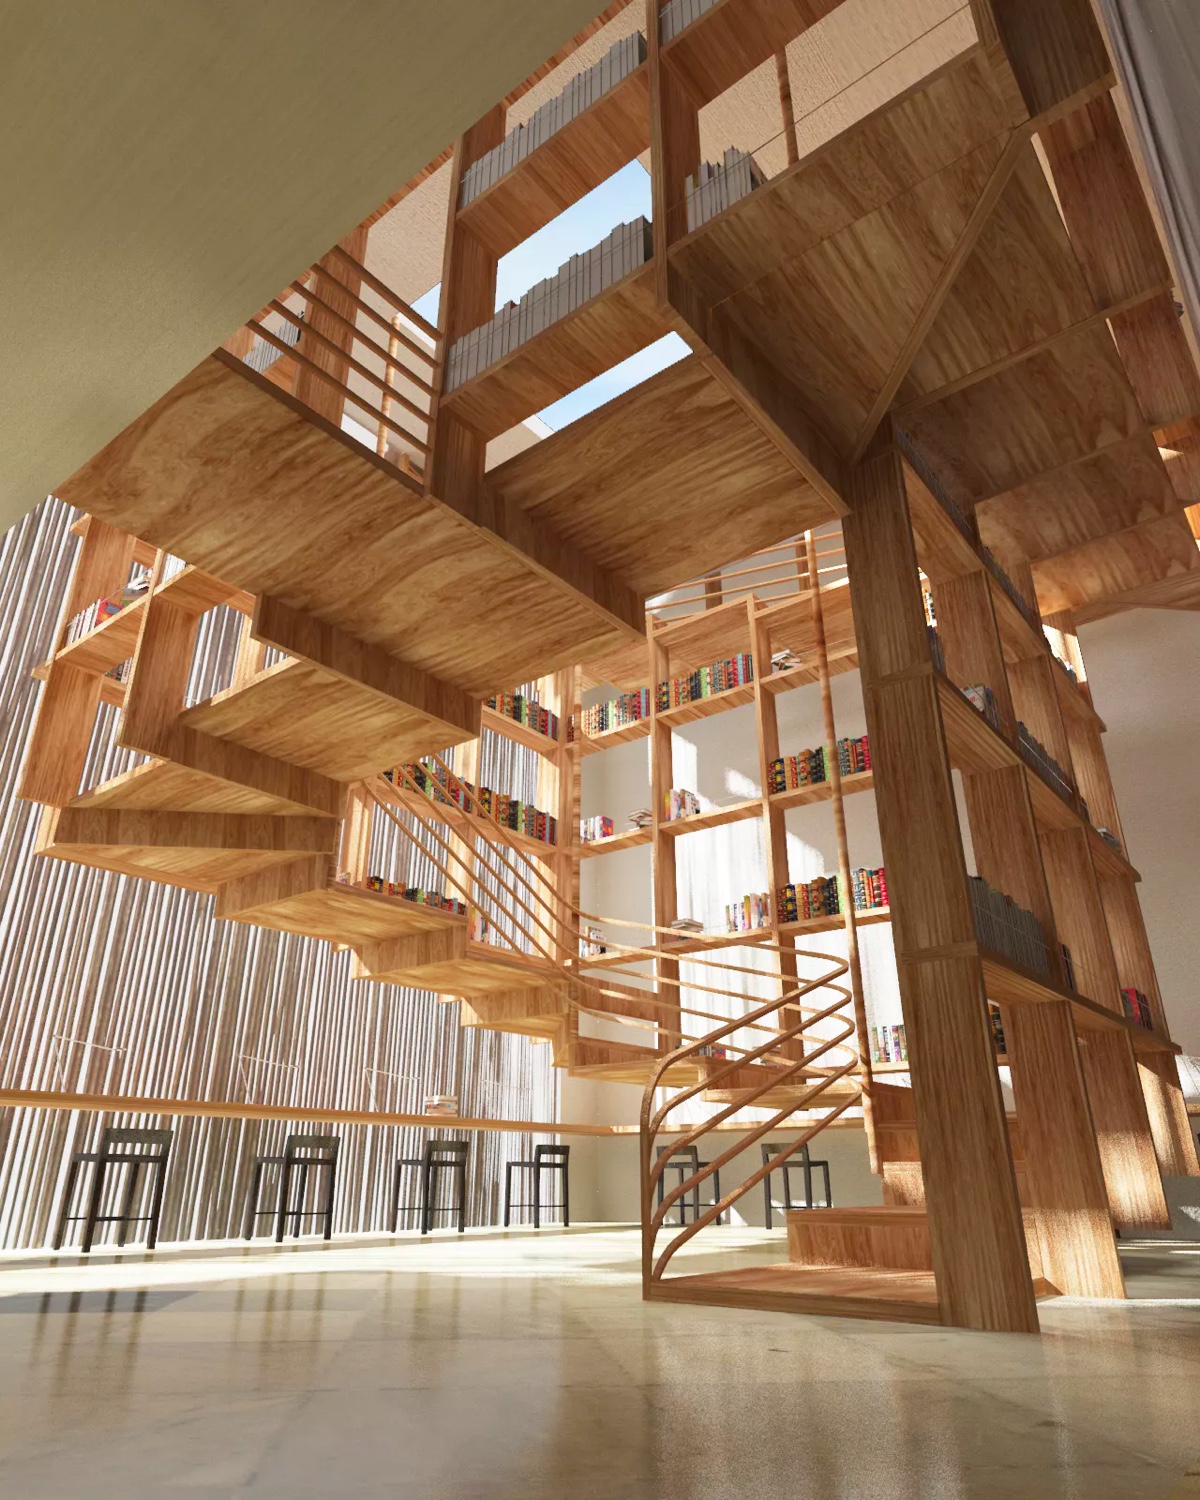 Cầu thang xoắn ốc có khung bằng gỗ tích hợp giá sách khổng lồ.